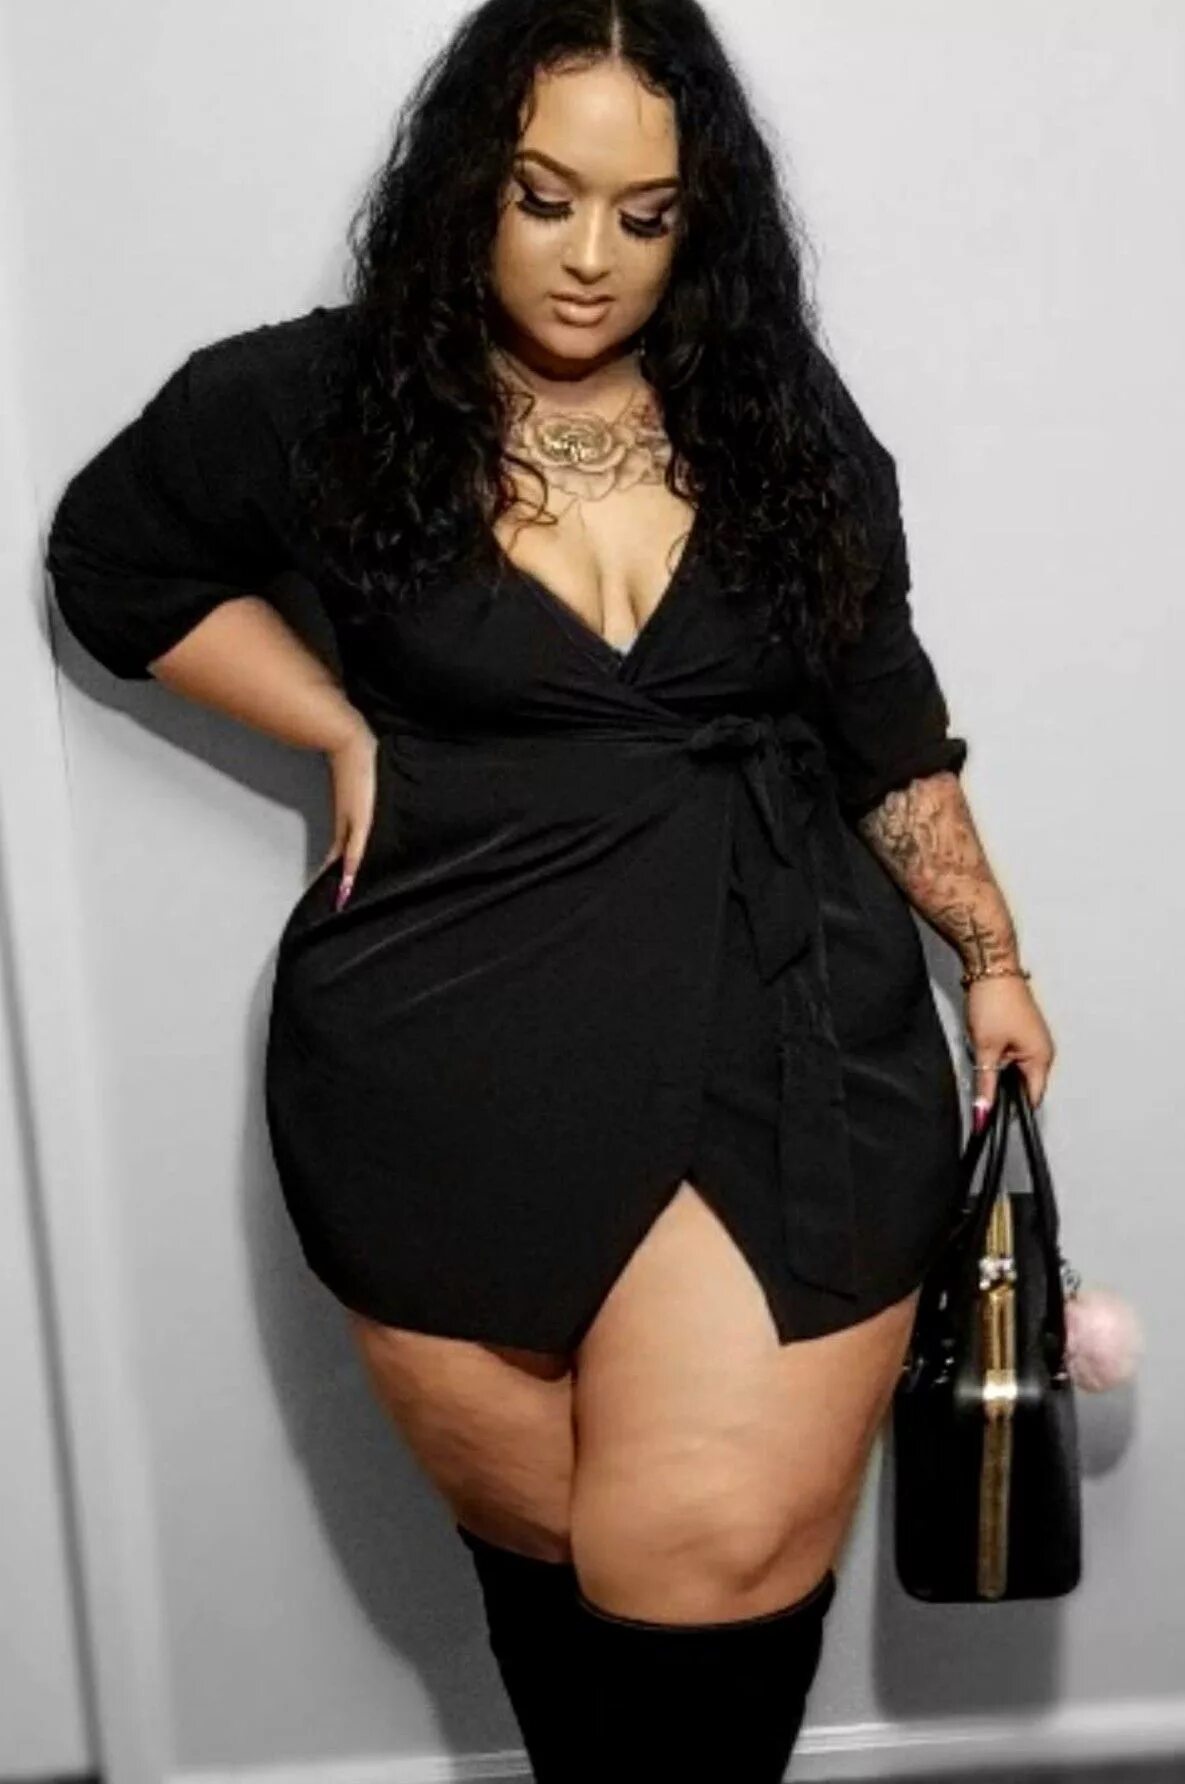 Широкий бедра толстая женщины. Модели с толстыми ногами. Женщины с жирными бёдрами. Жирные черные женщины.